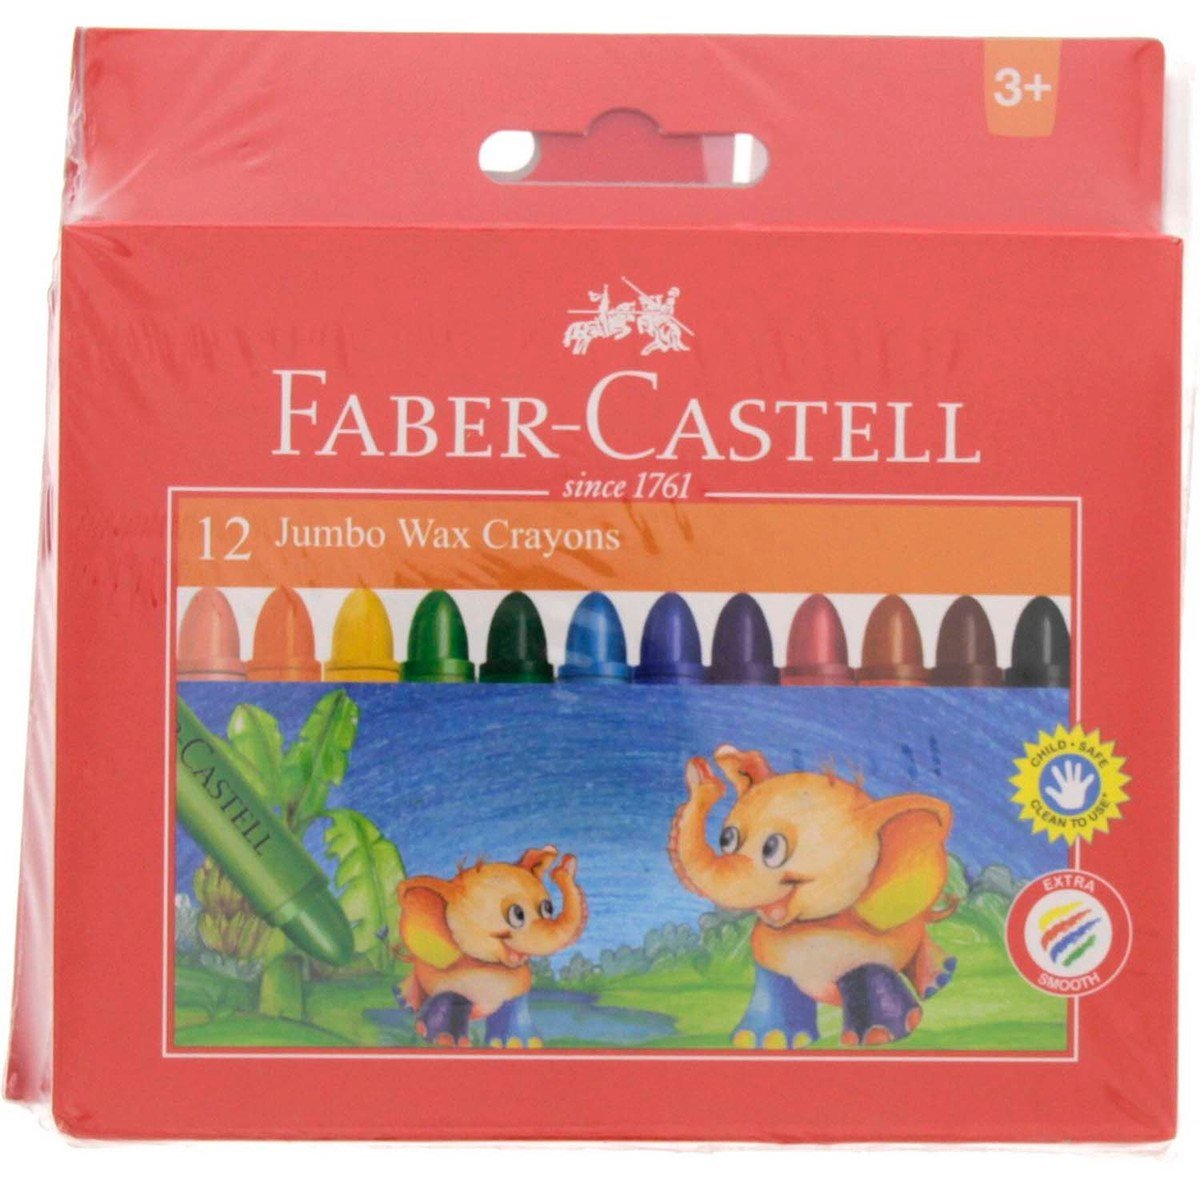 فابر-كاستل طباشير  تلوين جامبو 12 لون + أقلام تخطيط للتلوين 6 ألوان + أقلام تلوين خشبية 12 لون